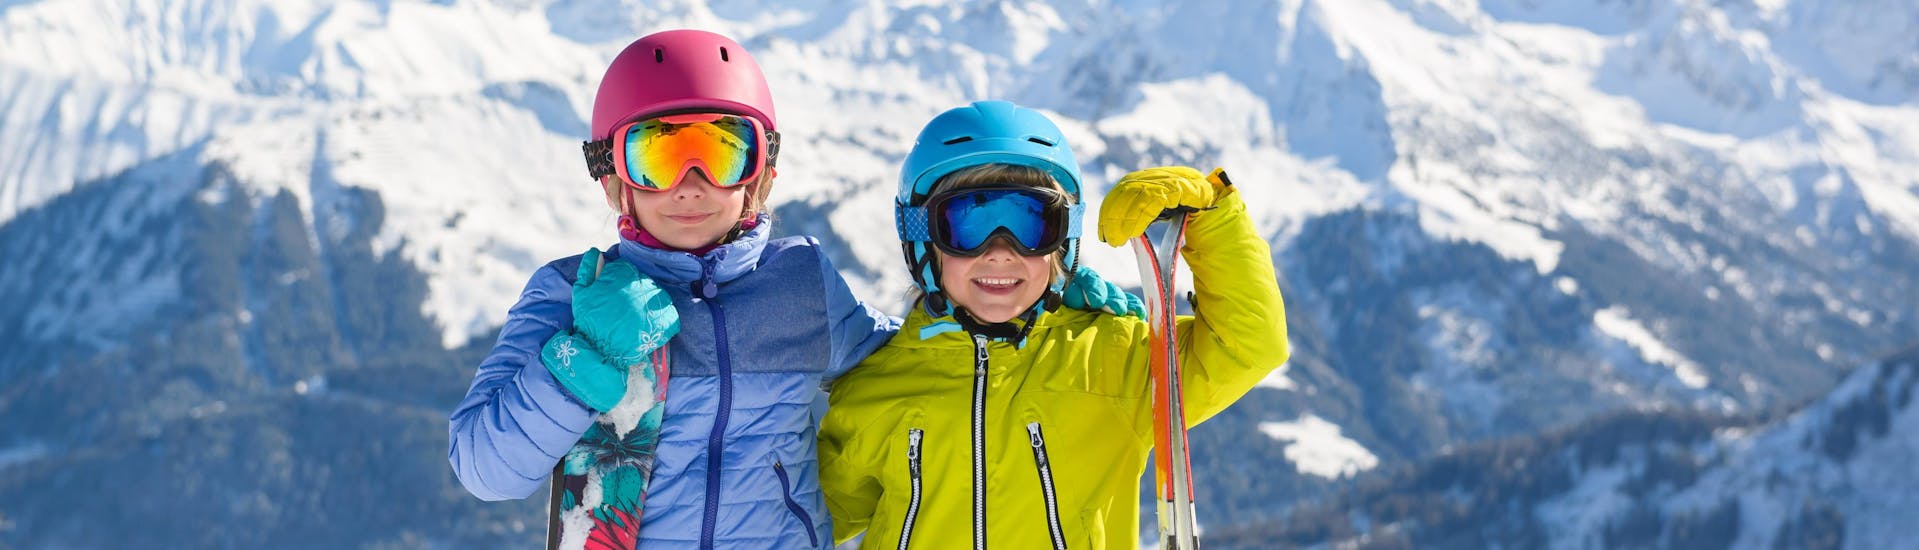 Zwei Kinder in voller Skimontur bereiten sich am Berggipfel auf ihren Kinder-Skikurs vor und lächeln dabei in die Kamera.